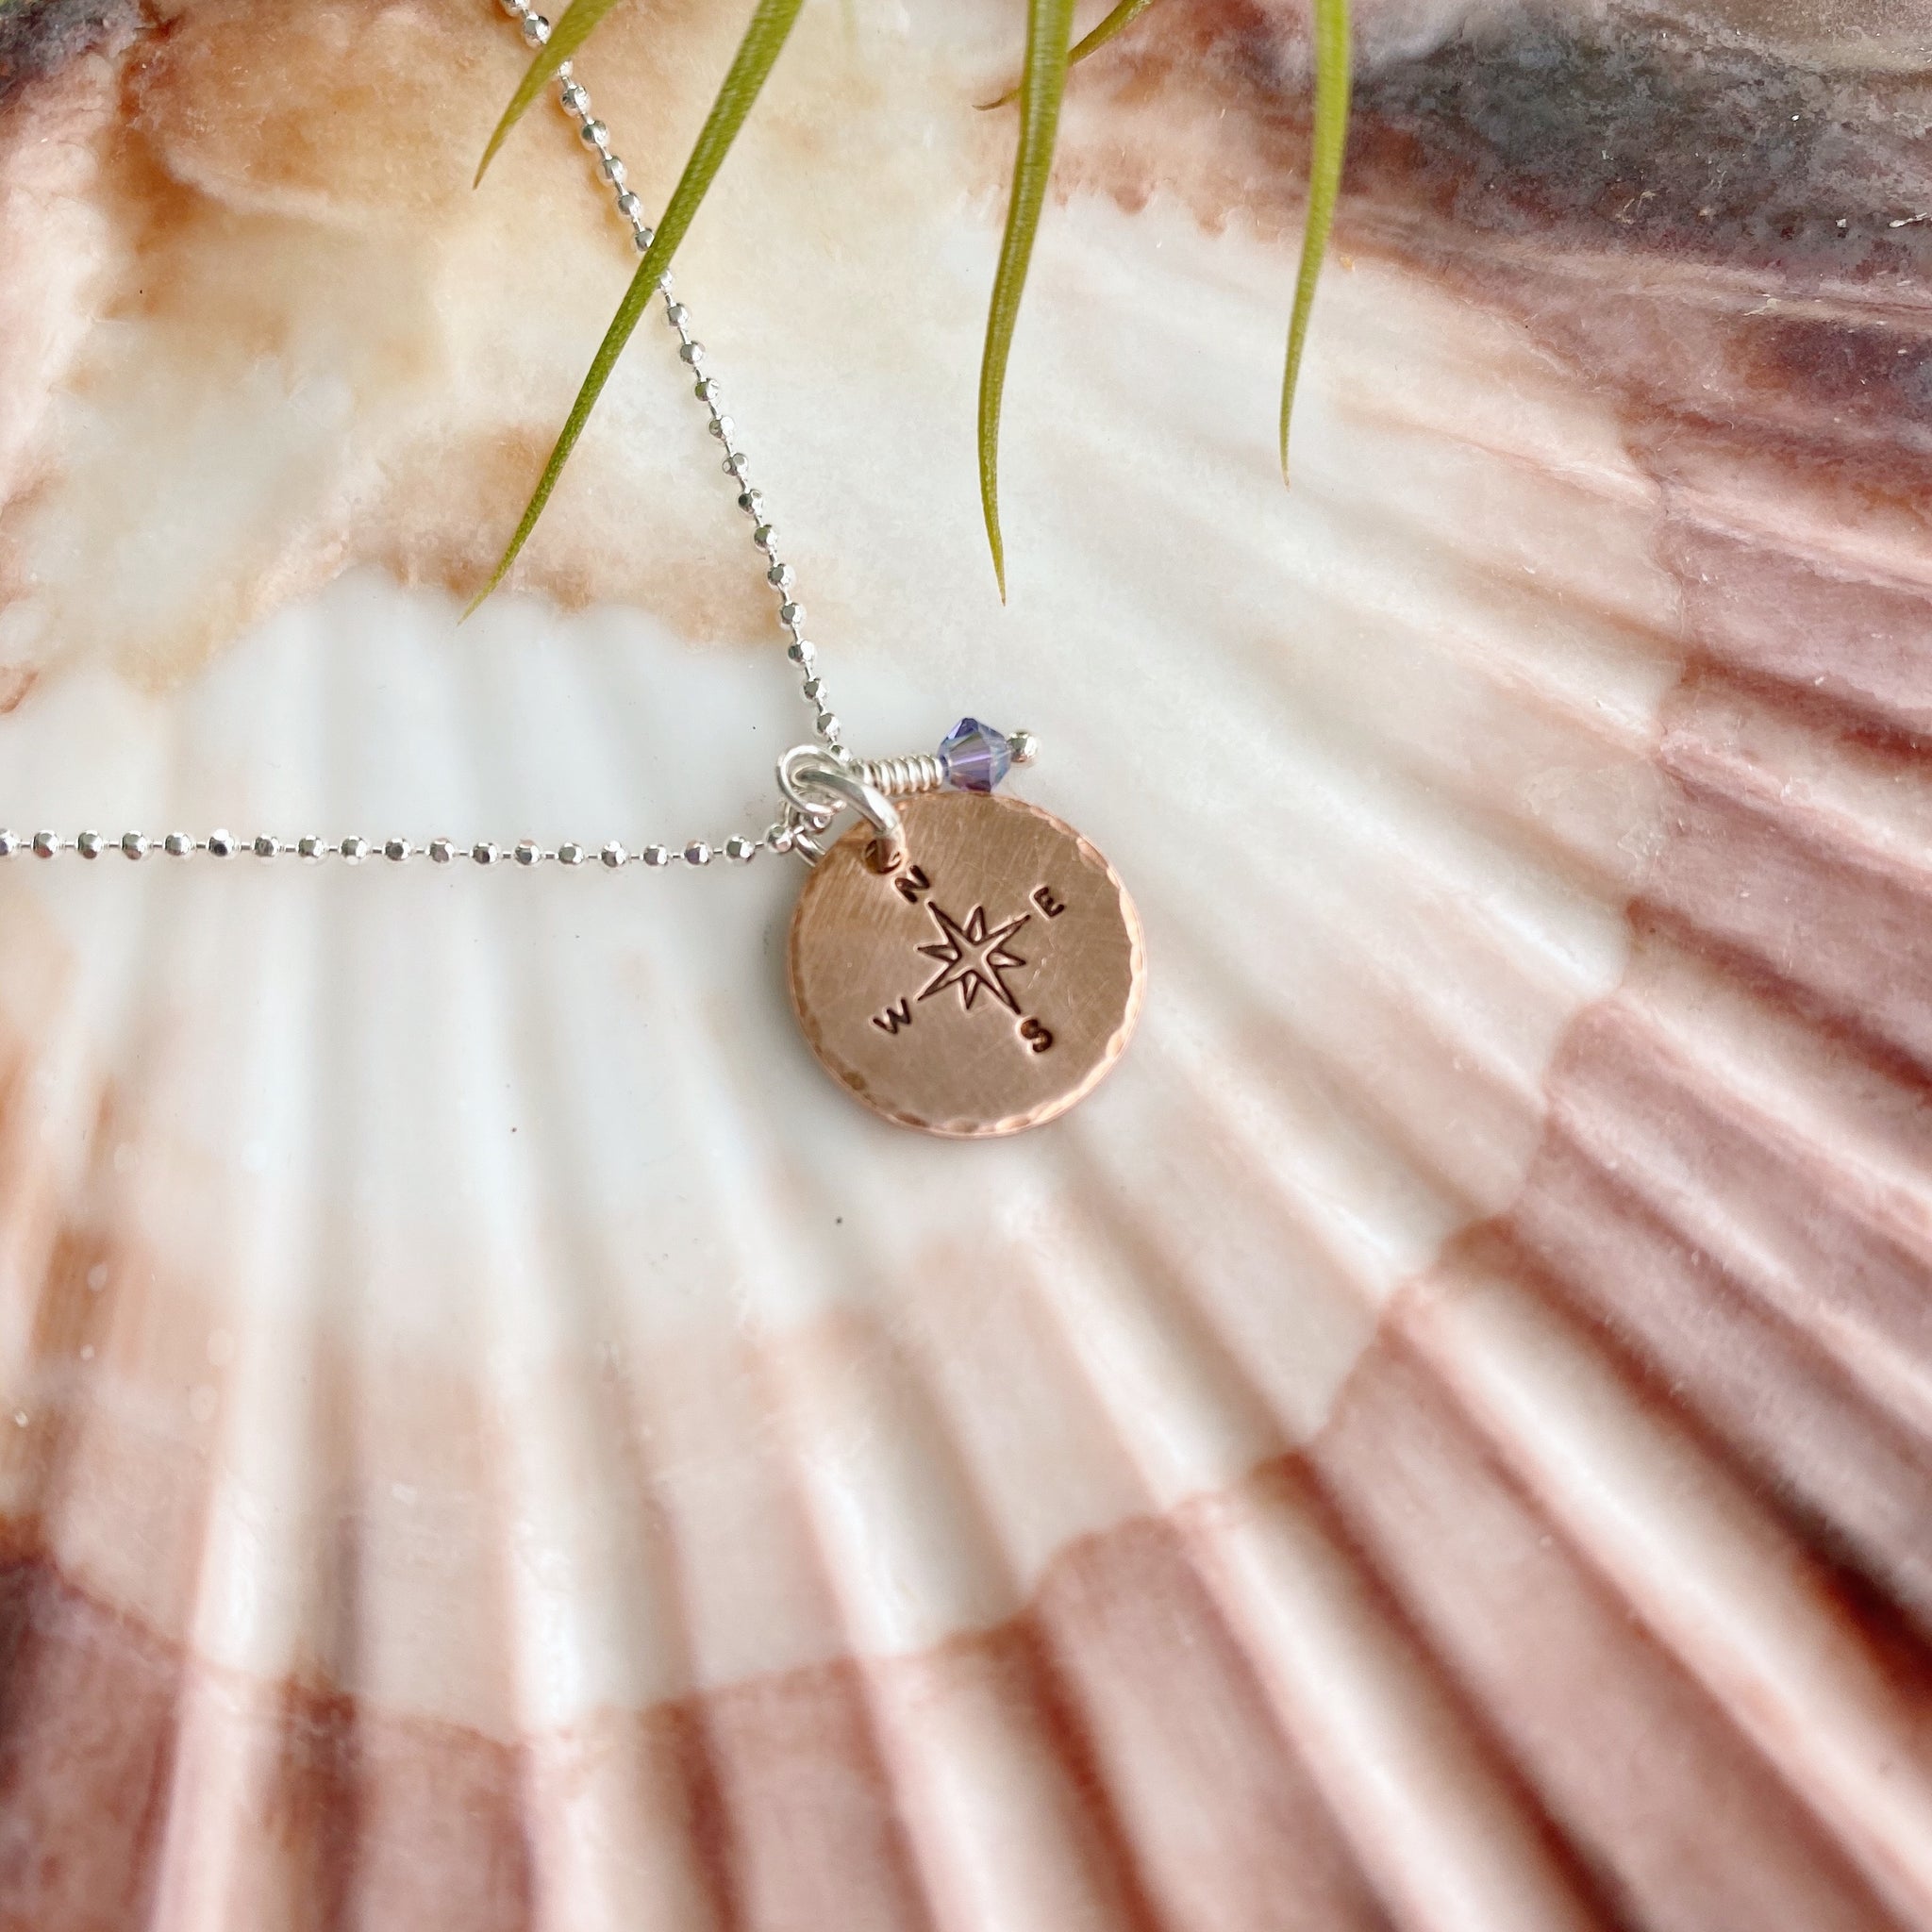 True North Compass Necklace — Copper